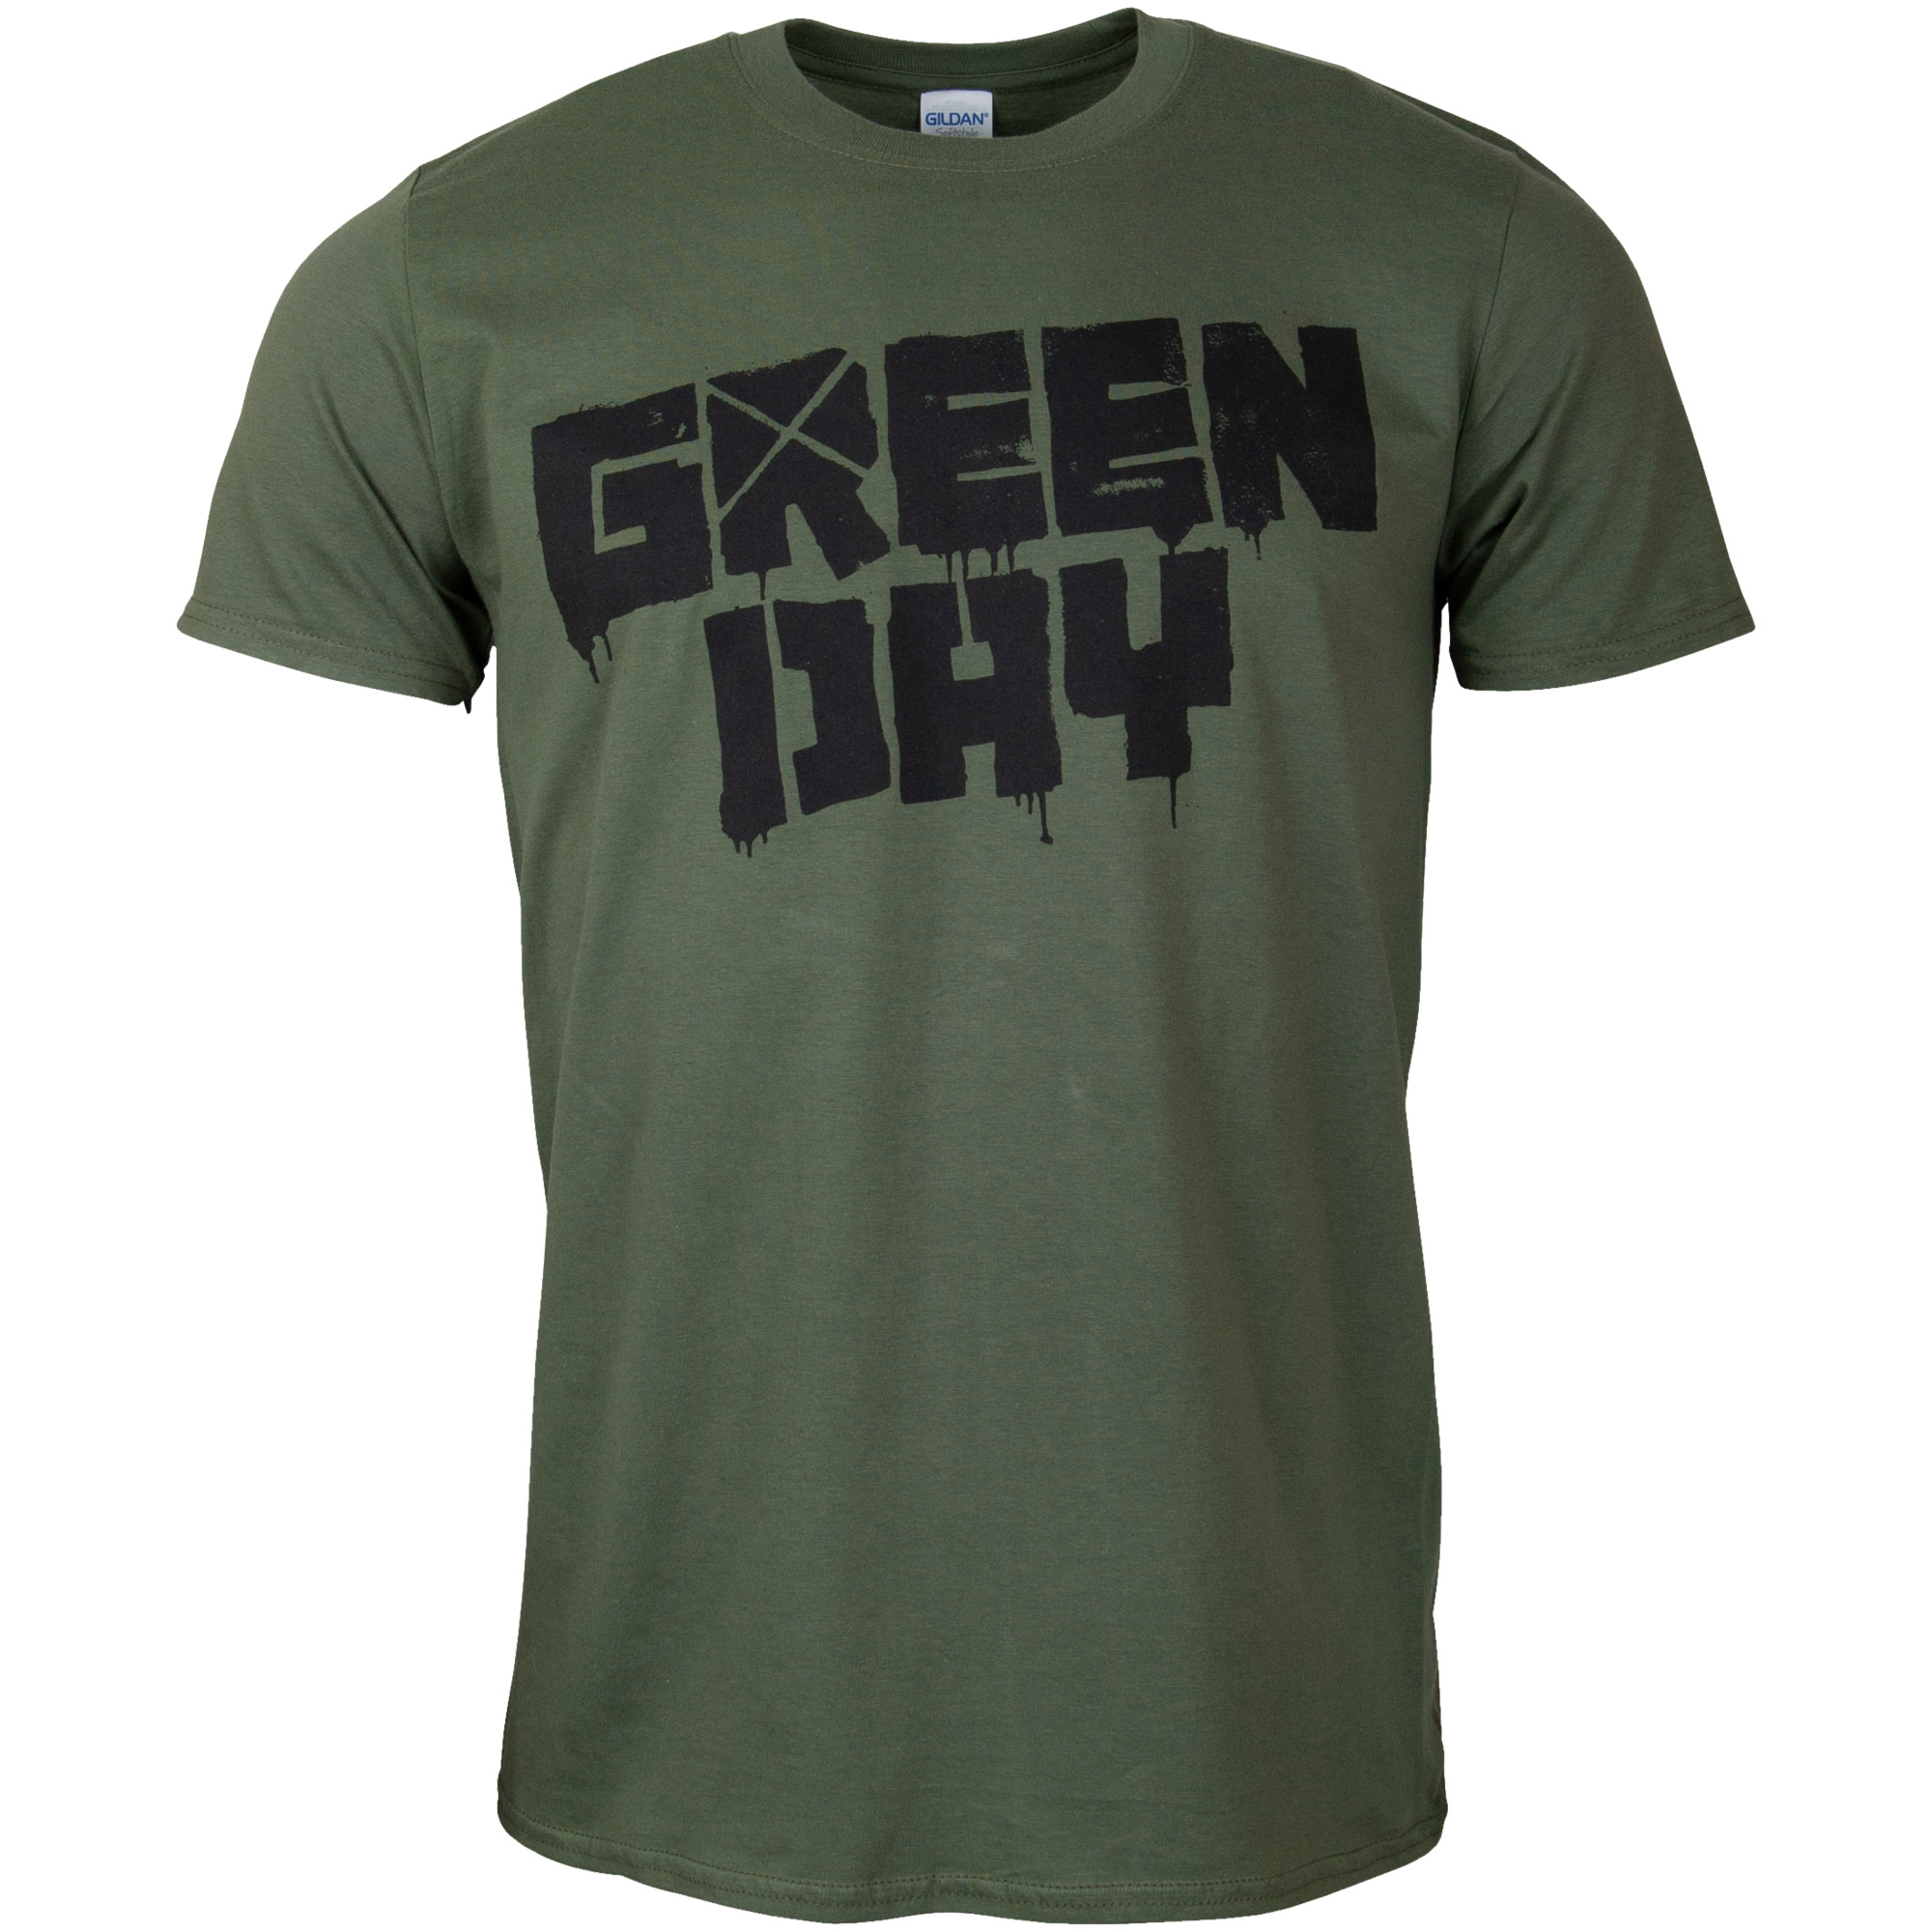 Green Day - T-Shirt 21st Century Breakdown - grün